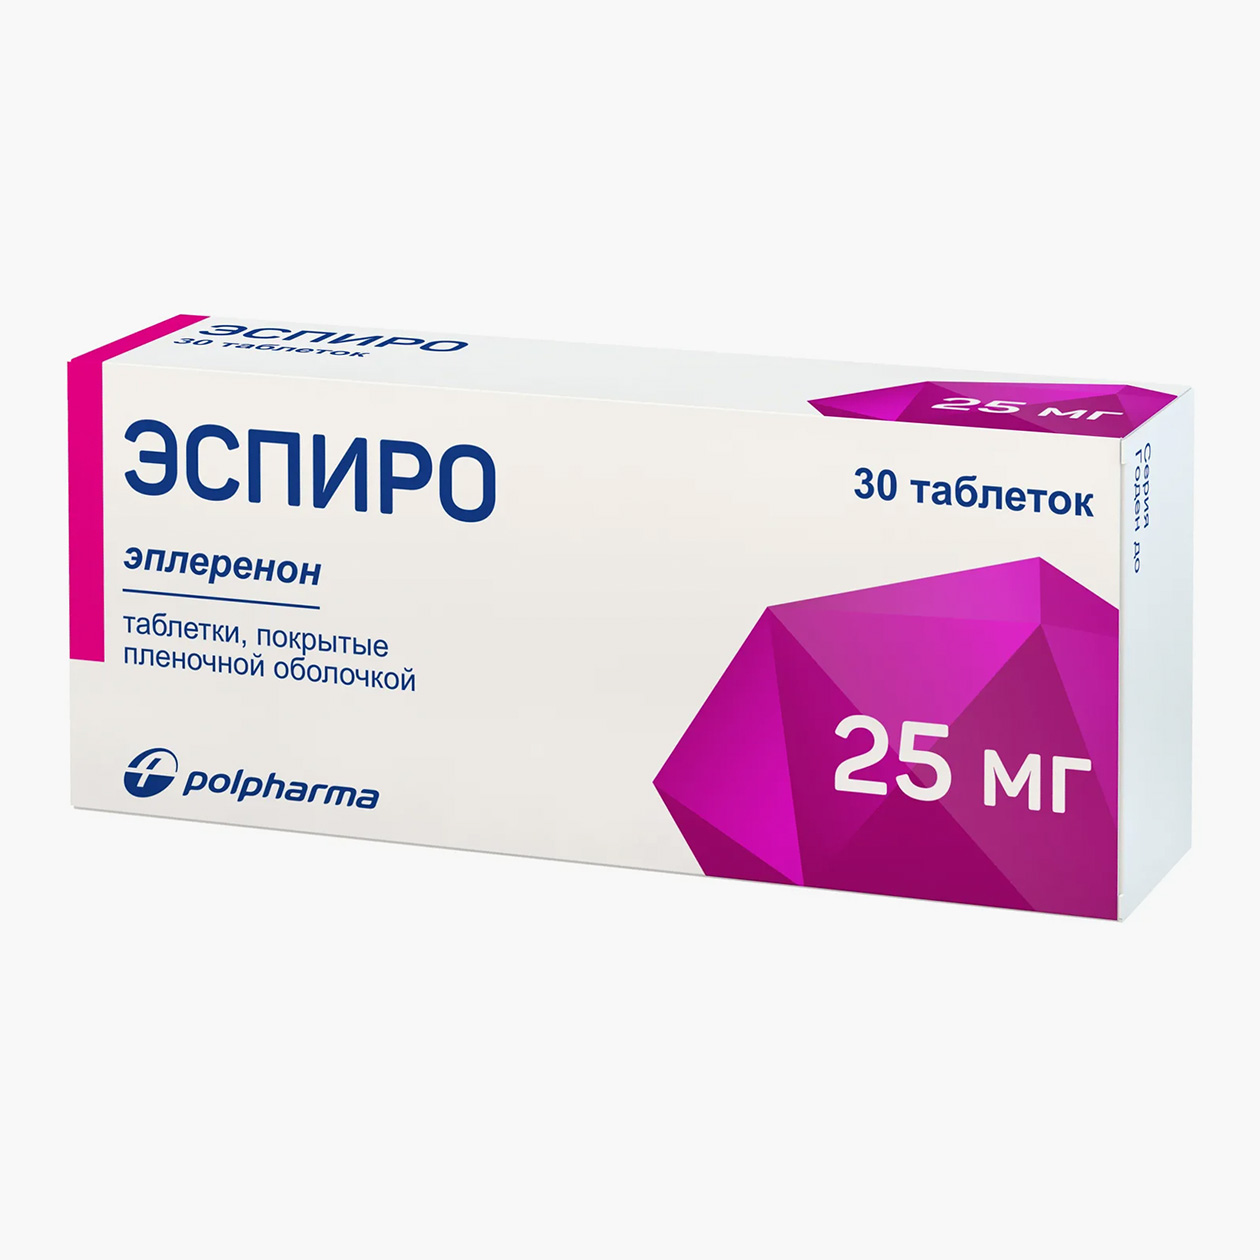 «Эспиро», 25 мг. Аналог по действующему веществу стоит немного дешевле